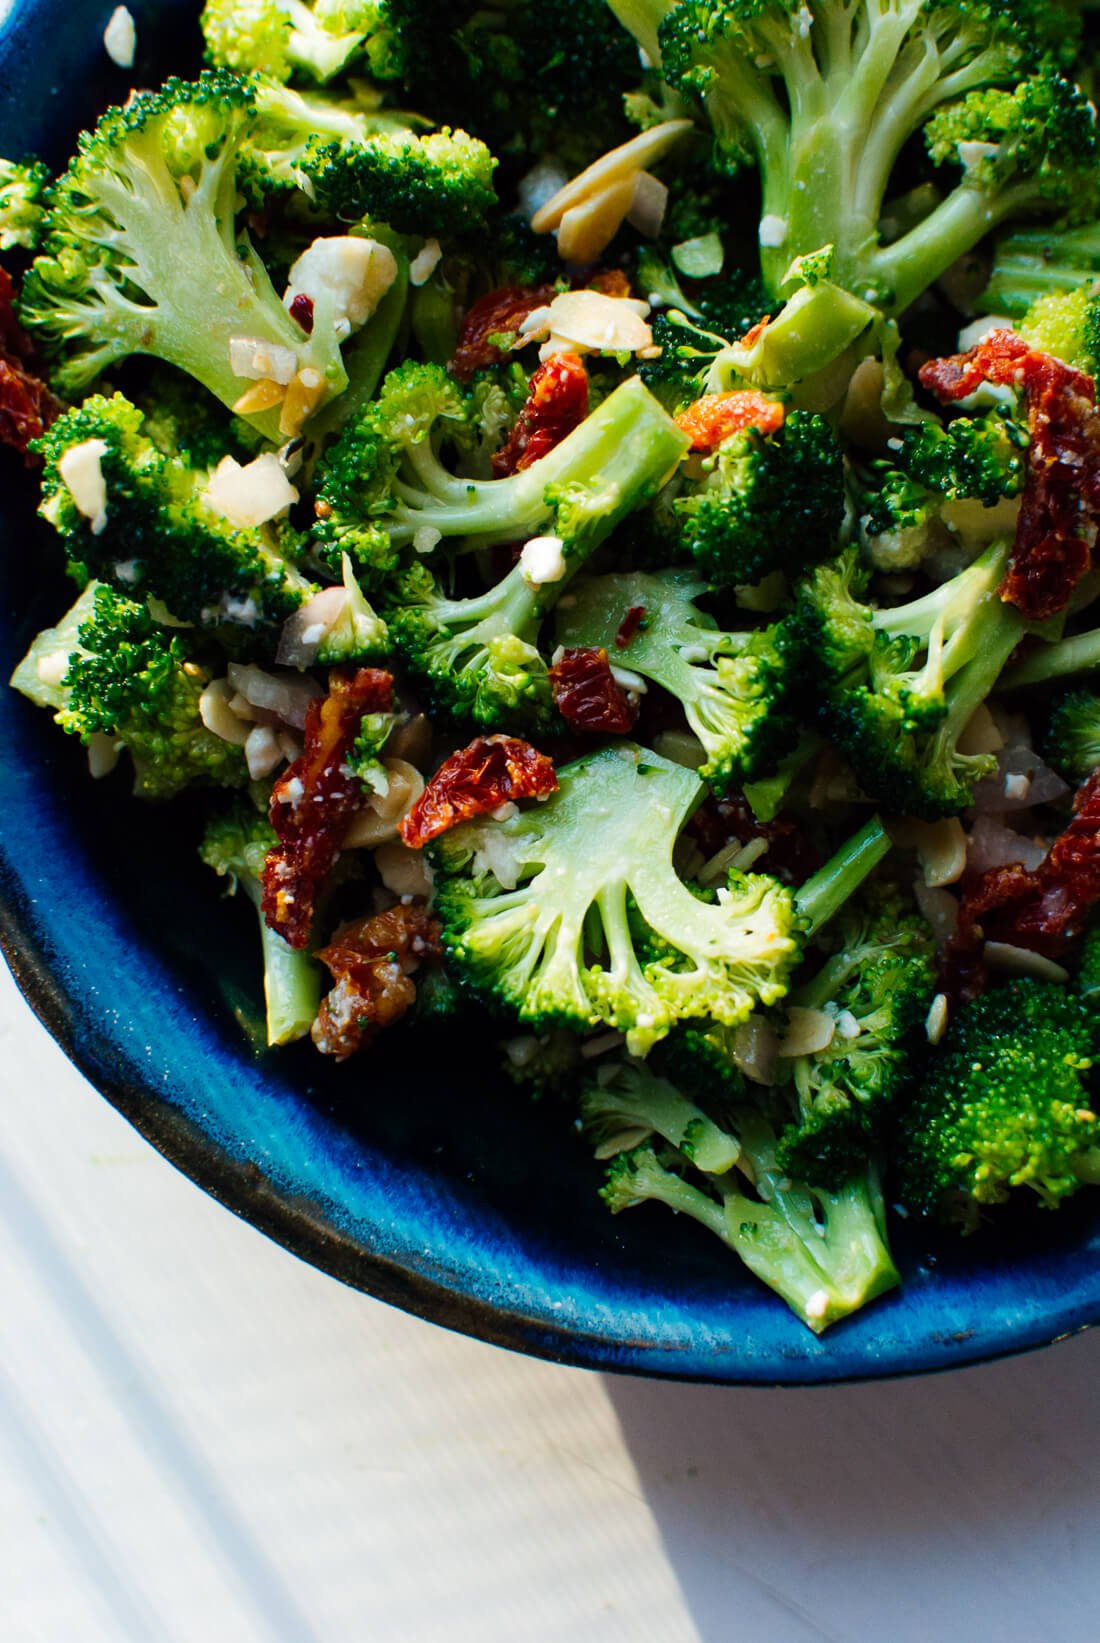 Easy and delicious Greek broccoli salad recipe